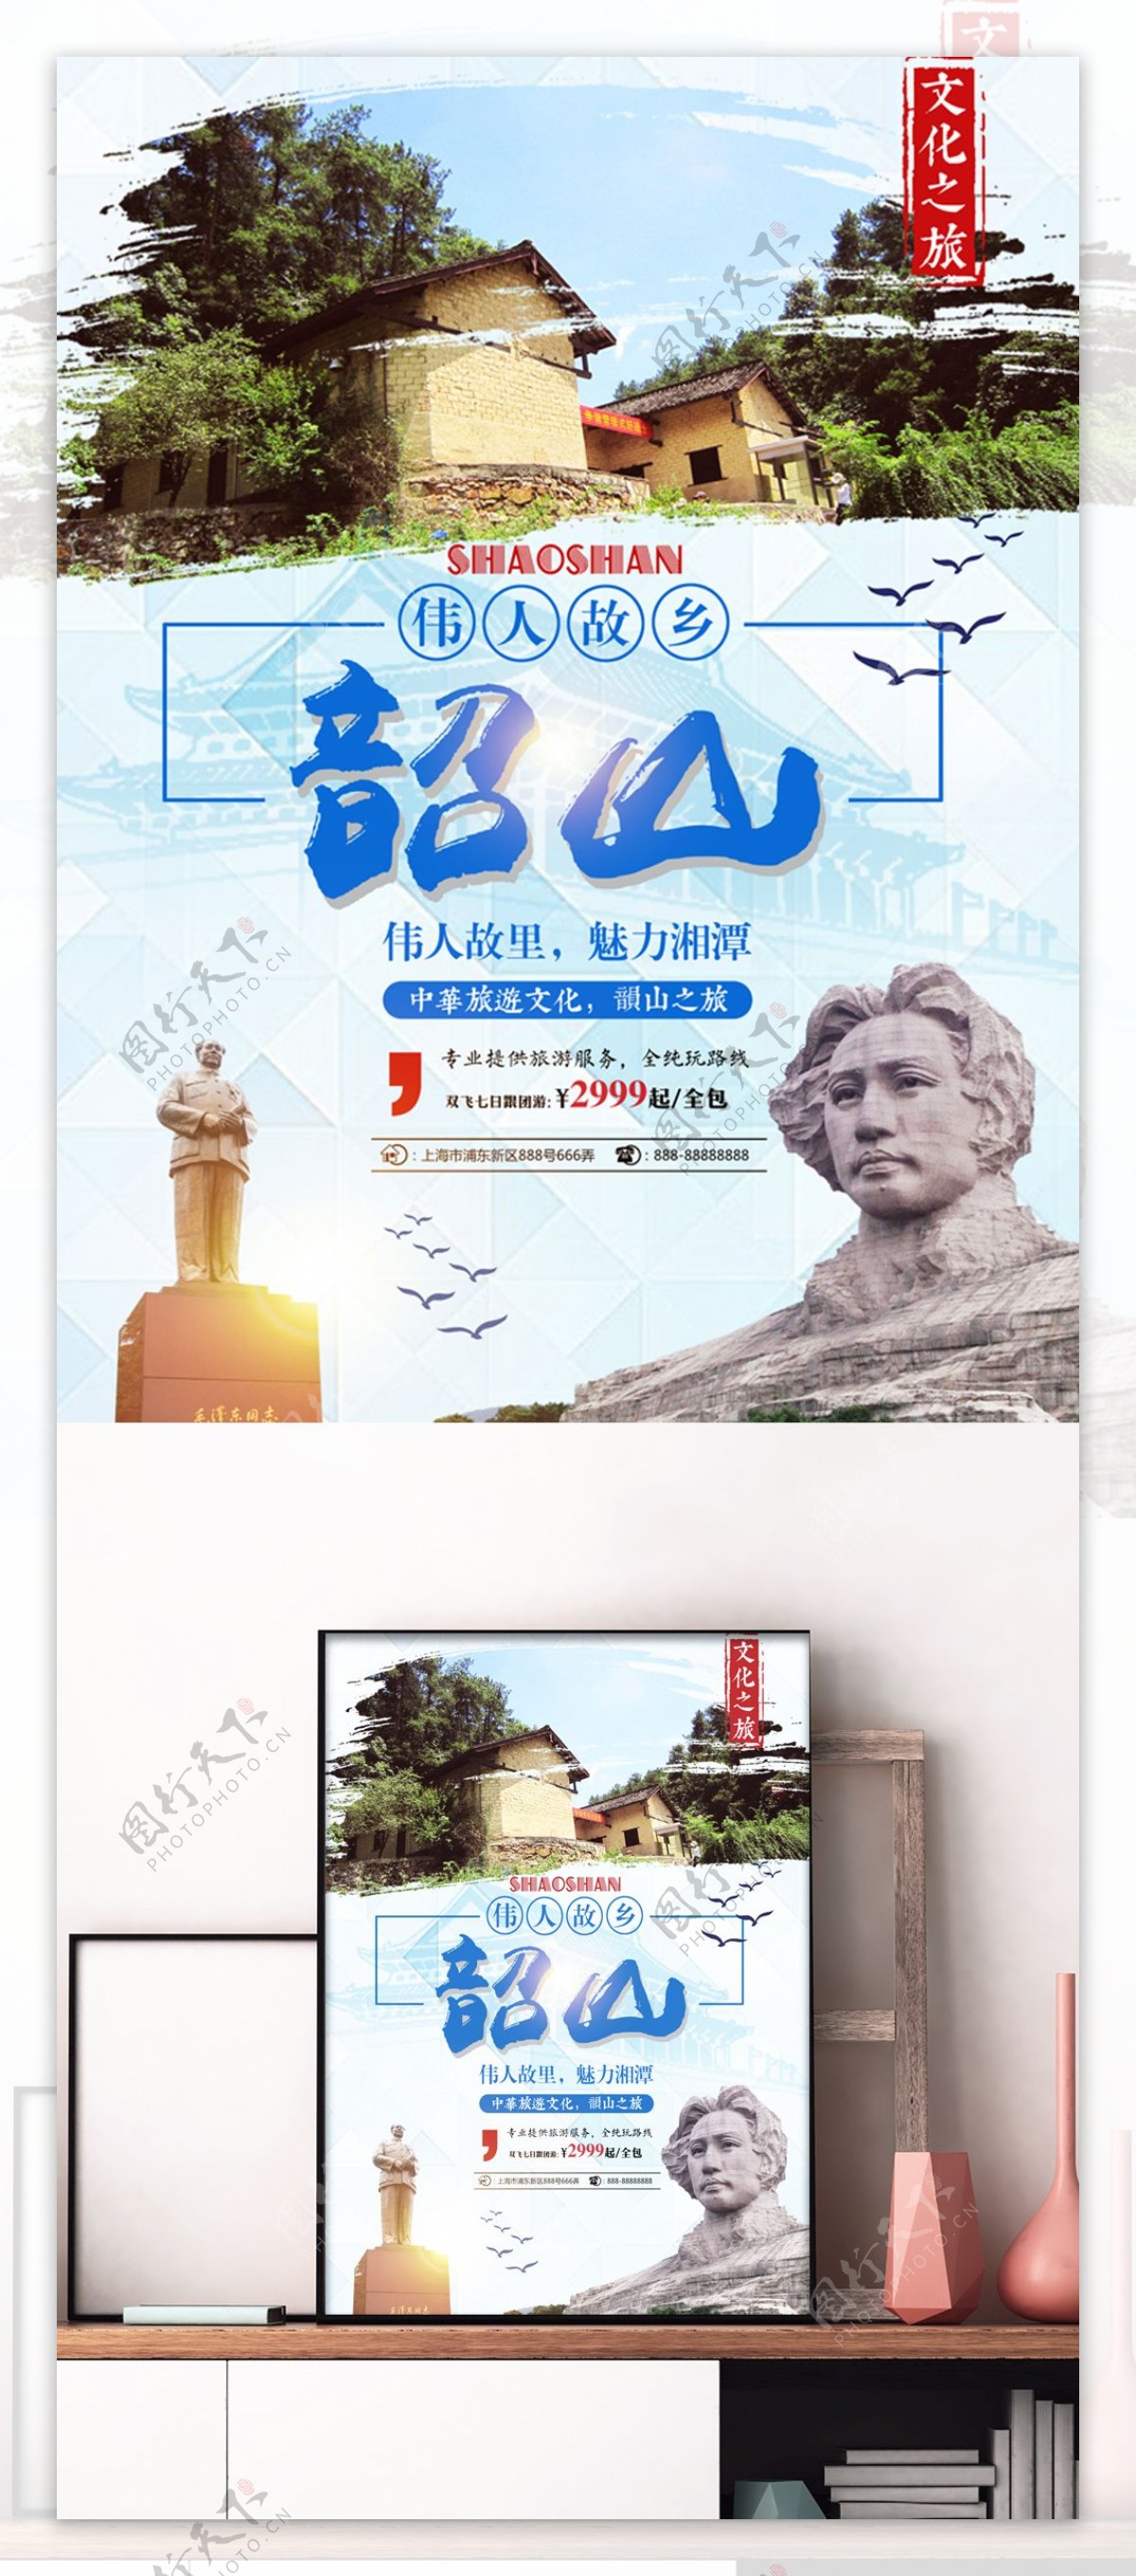 蓝色水墨风韶山旅游伟人雕像旅行社旅游海报